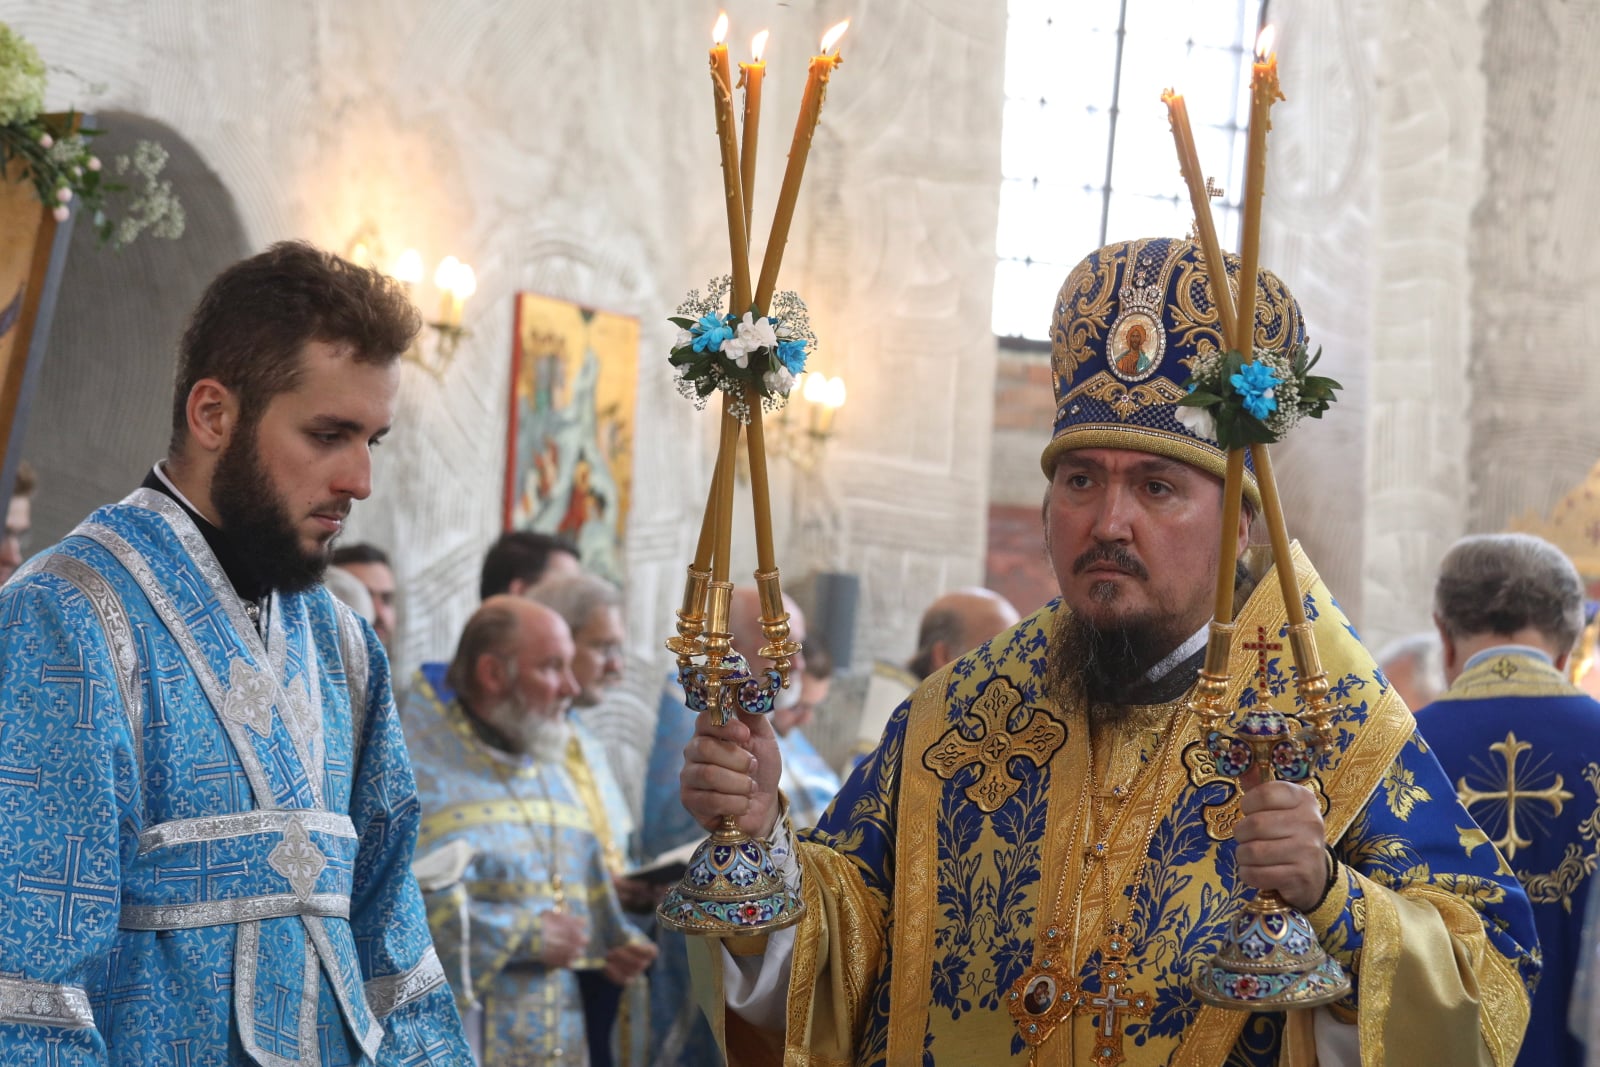 Supraśl, Obchody prawosławnego święta Supraskiej Ikony Matki Boskiej
PAP/Artur Reszko